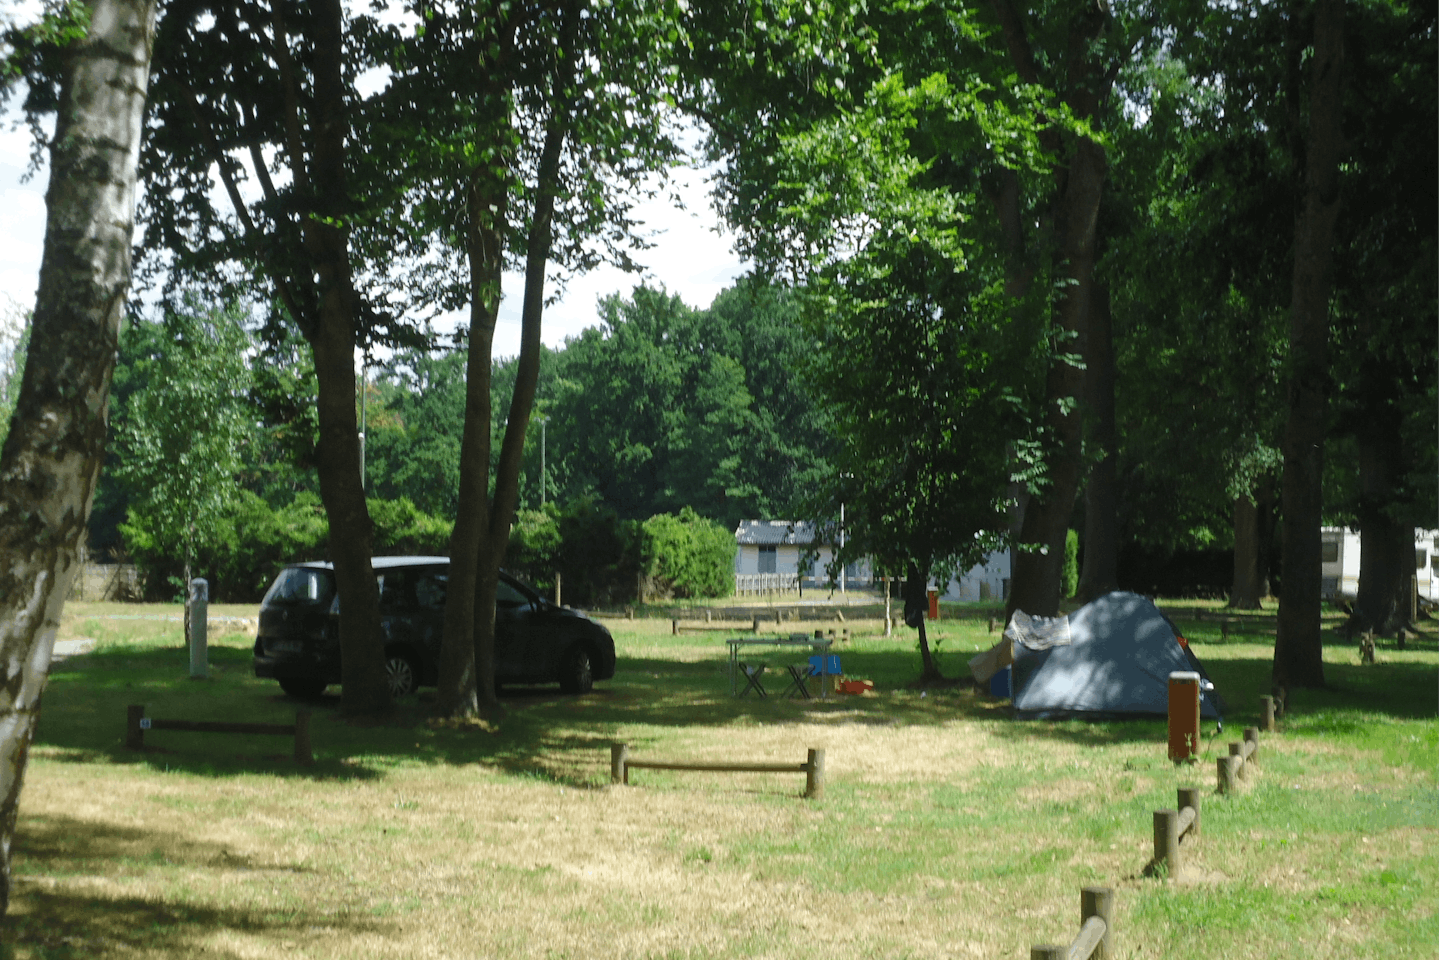 Camping Sauxillanges -Des Prairies d' Auvergne- - Wohnwagen- und Zeltstellplatz vom Campingplatz zwischen Bäumen